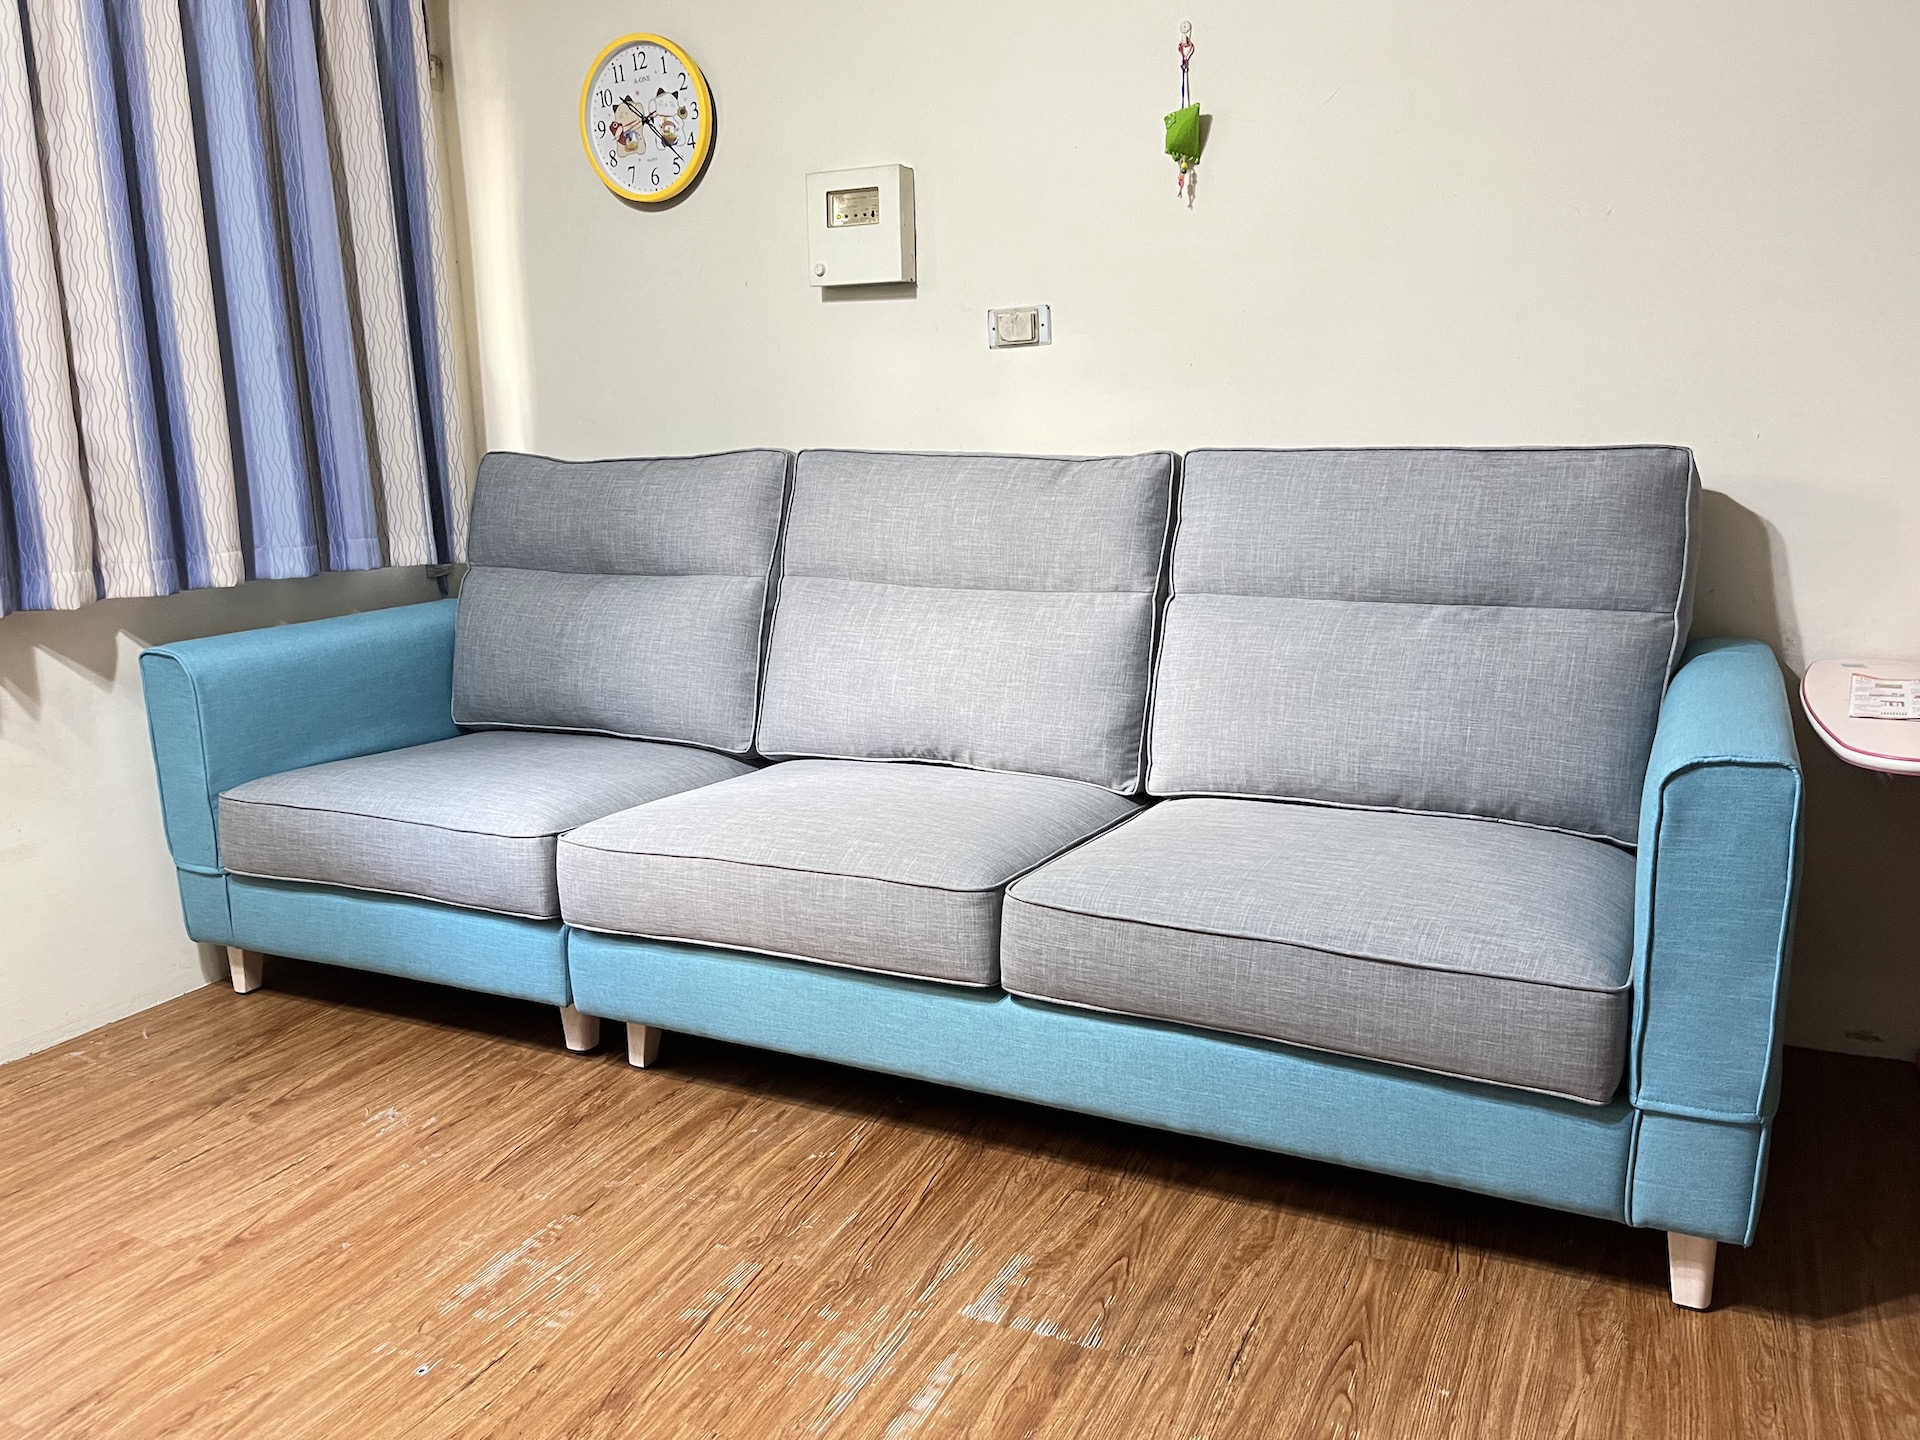 【客戶案例分享】台中太平雙色沙發訂製